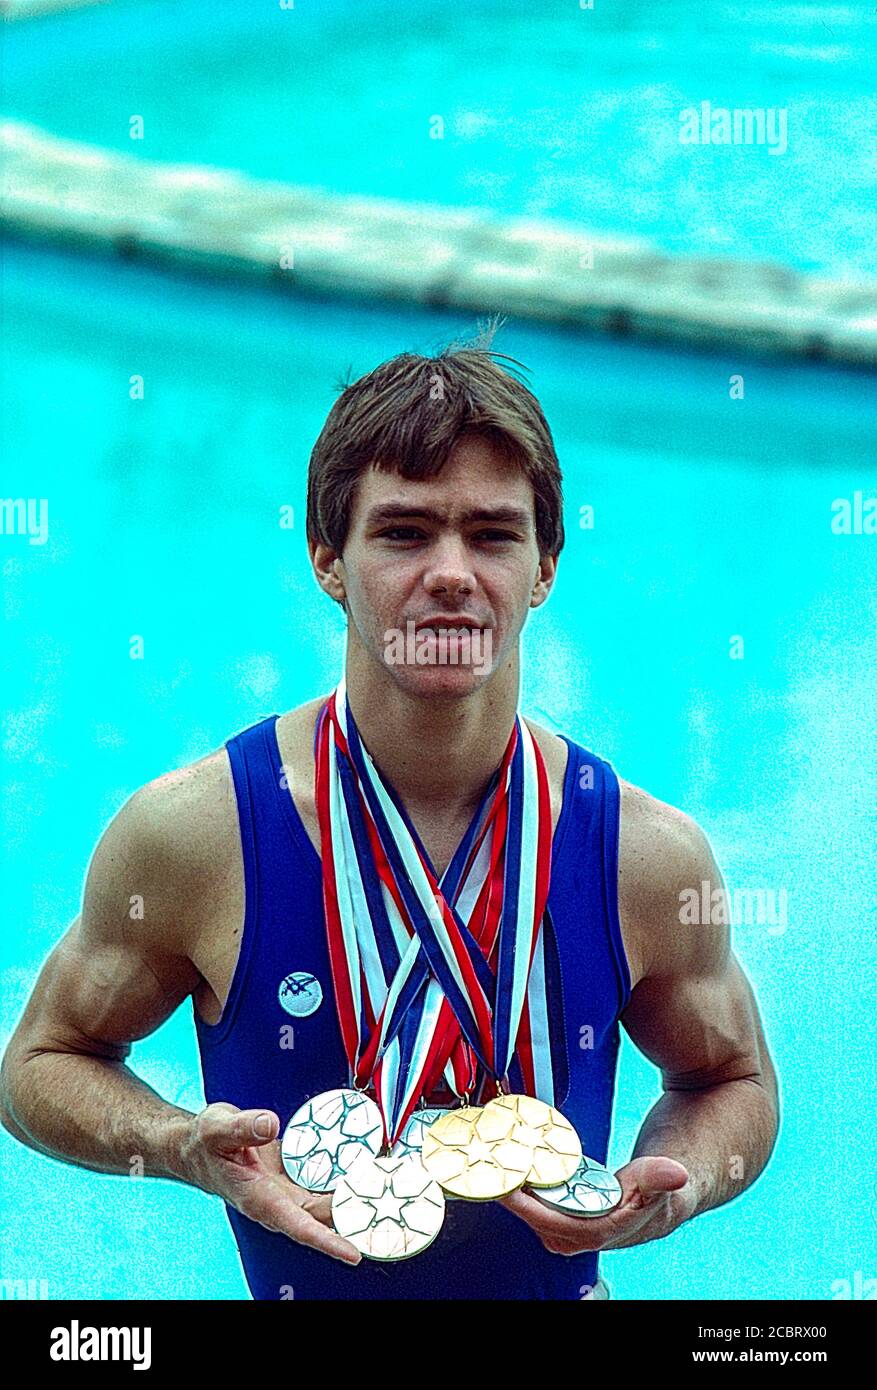 Kurt Thomas (USA) shows his medals won  at  the 1979 World Artistic Gymnastics Championships. Stock Photo